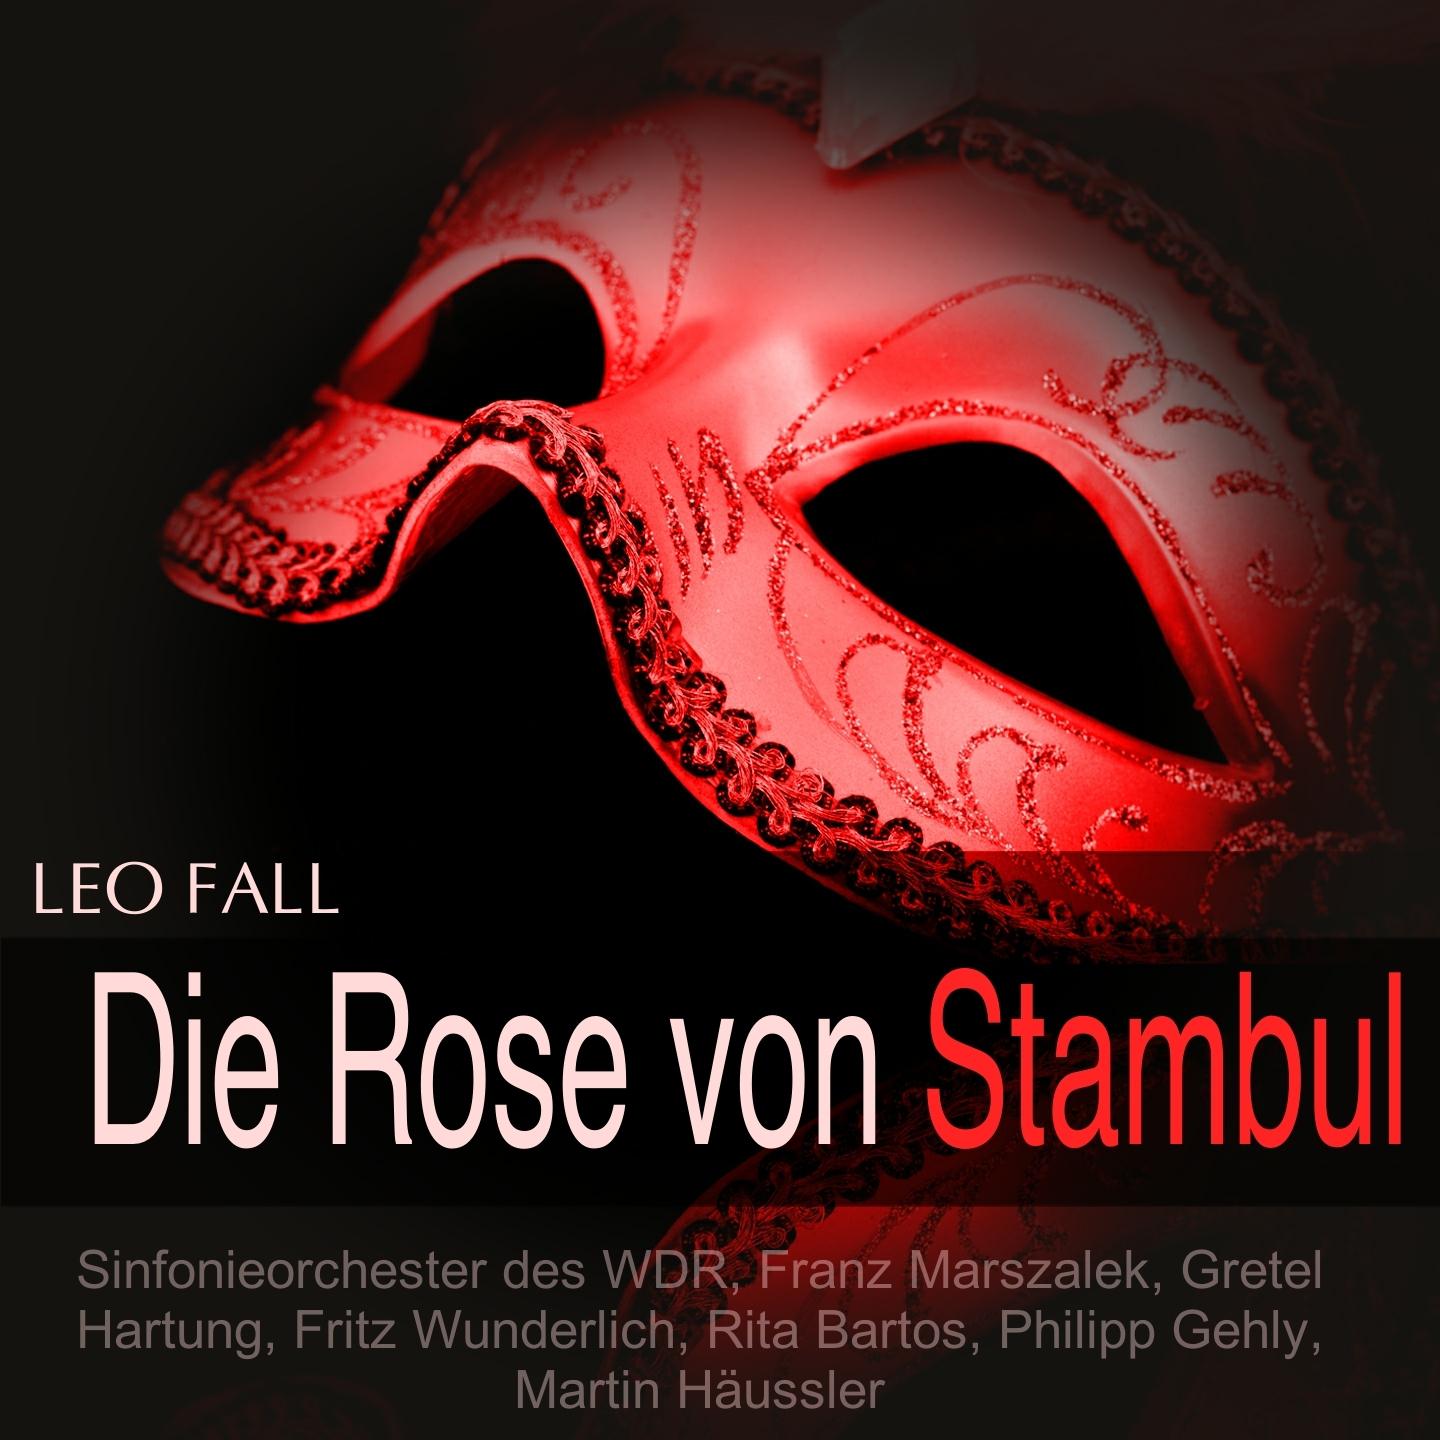 Die Rose von Stambul, Act I: "Als fromme Tochter des Propheten" (Chor, Midili, Kondja)